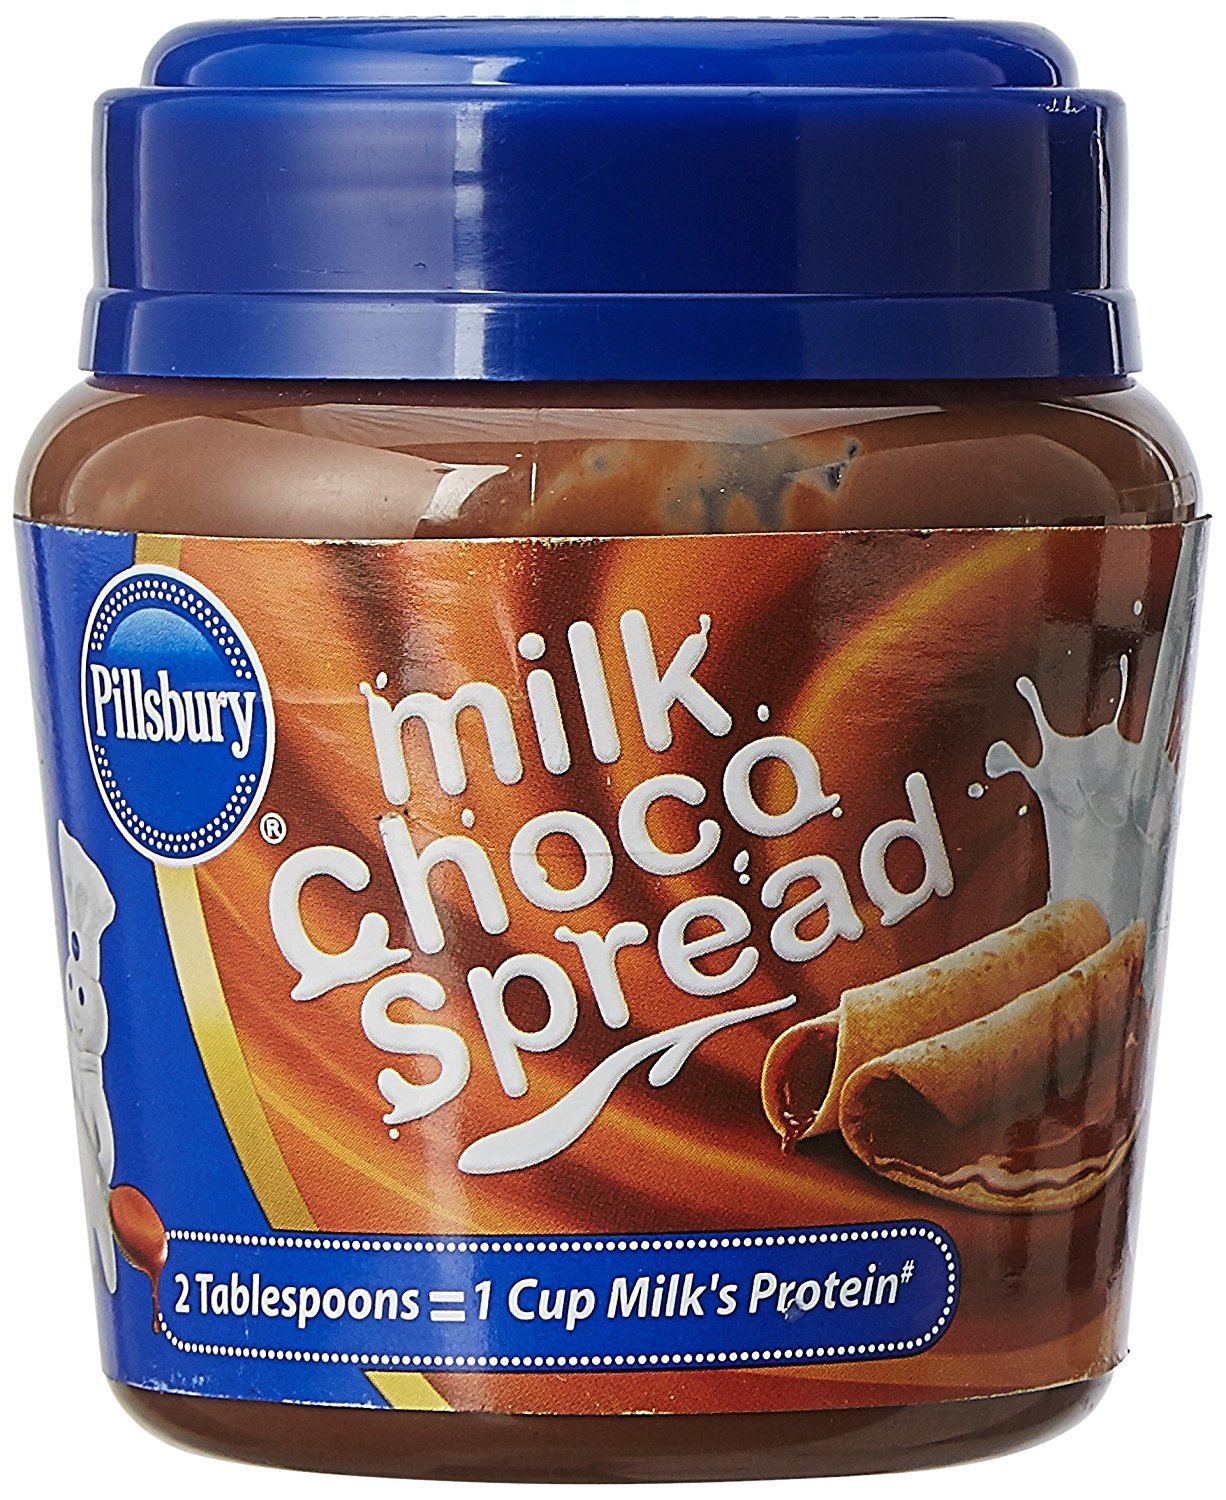 Pillsbury Milk Choco Spread, 290g